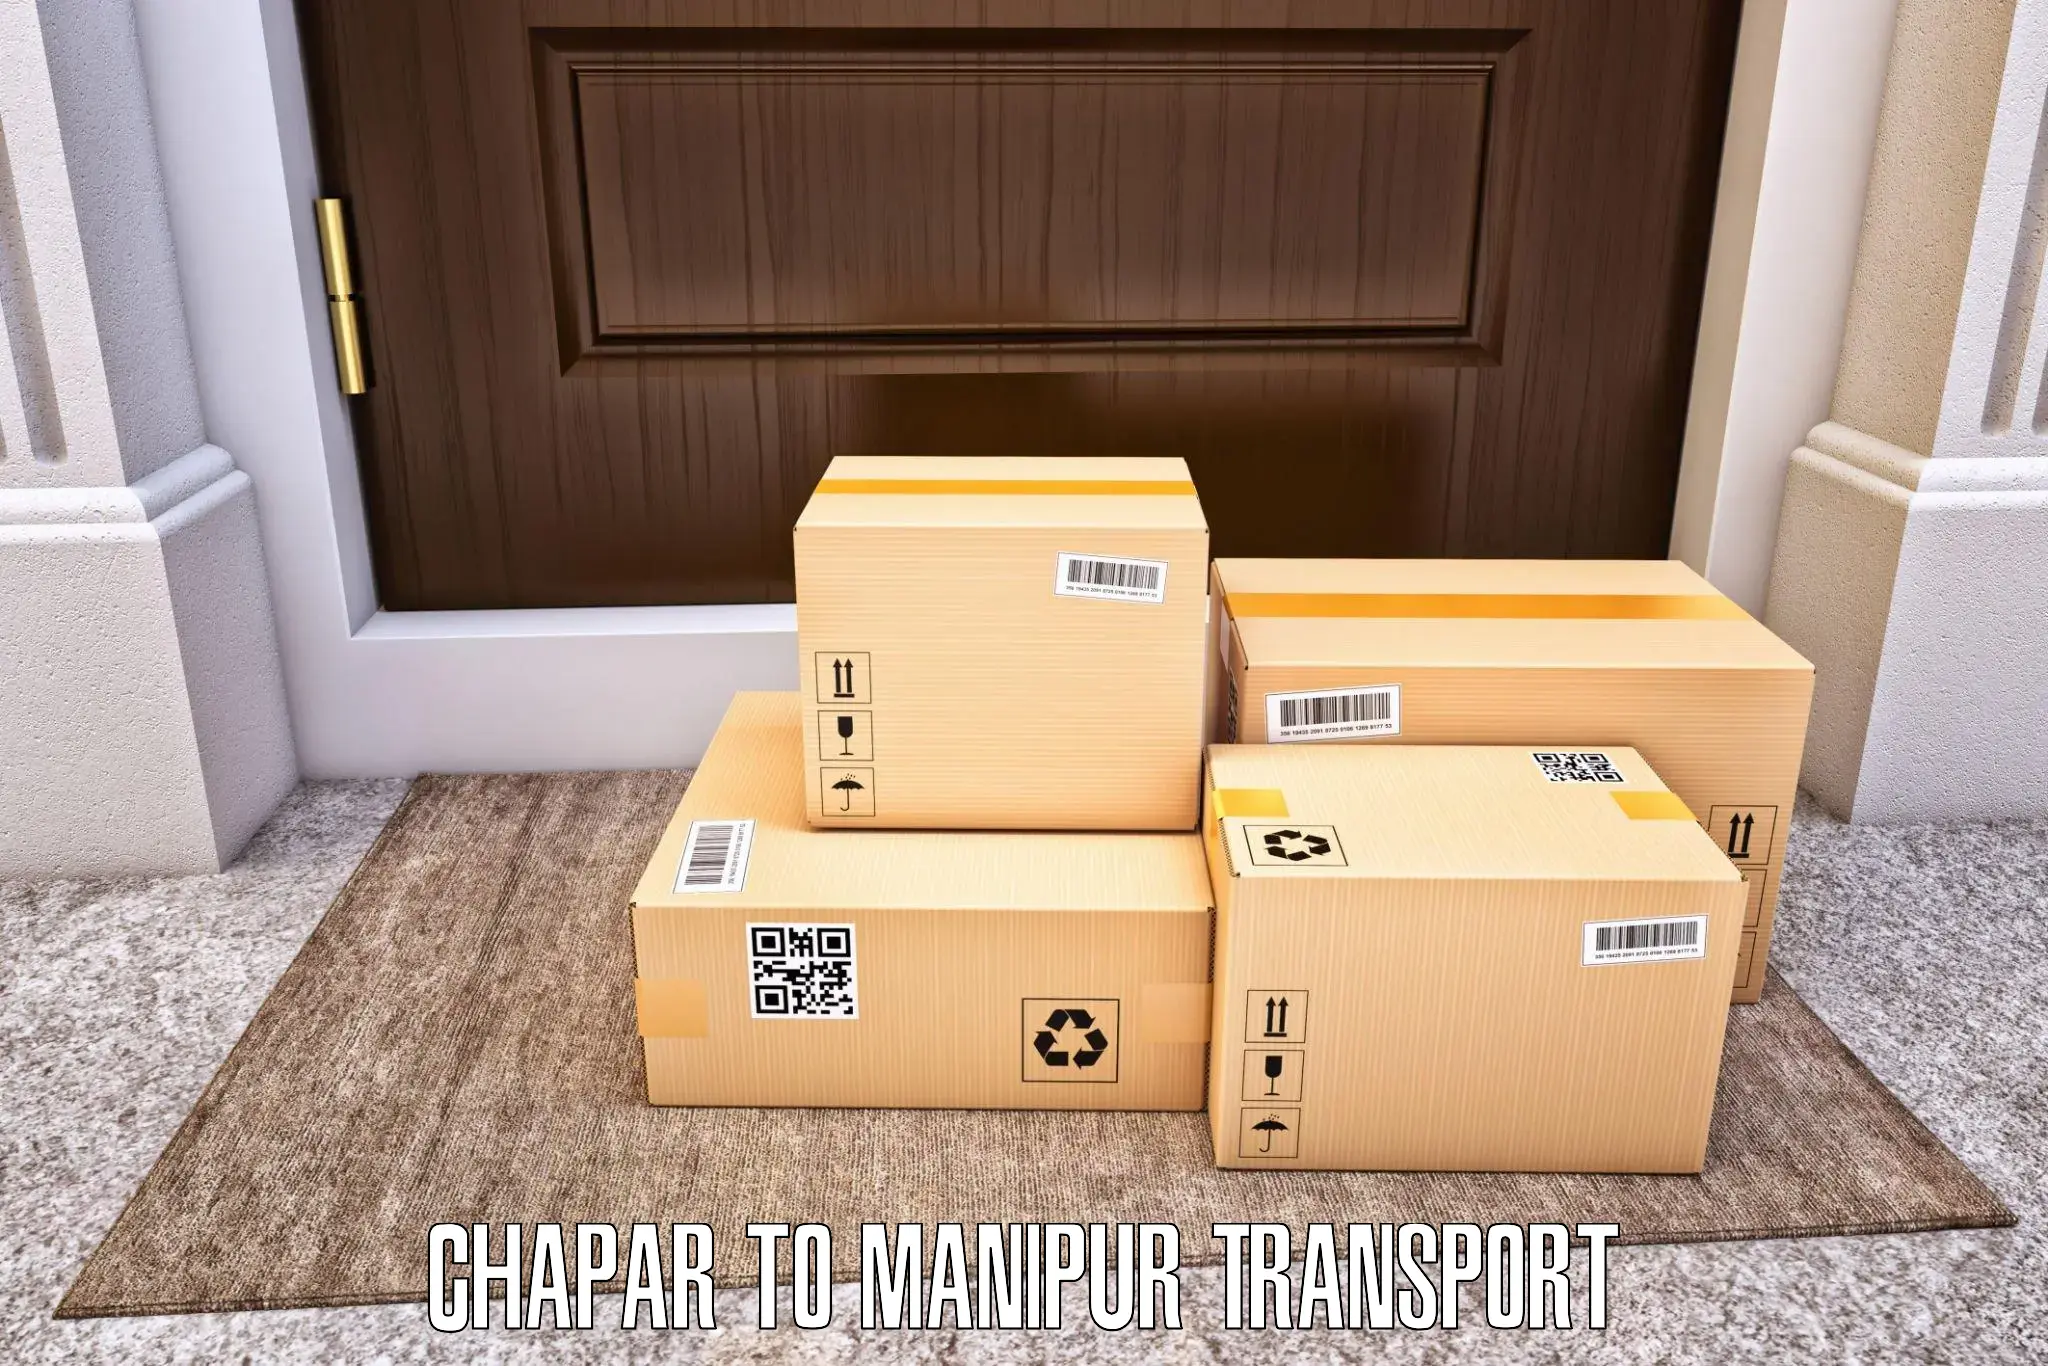 Interstate transport services Chapar to Churachandpur